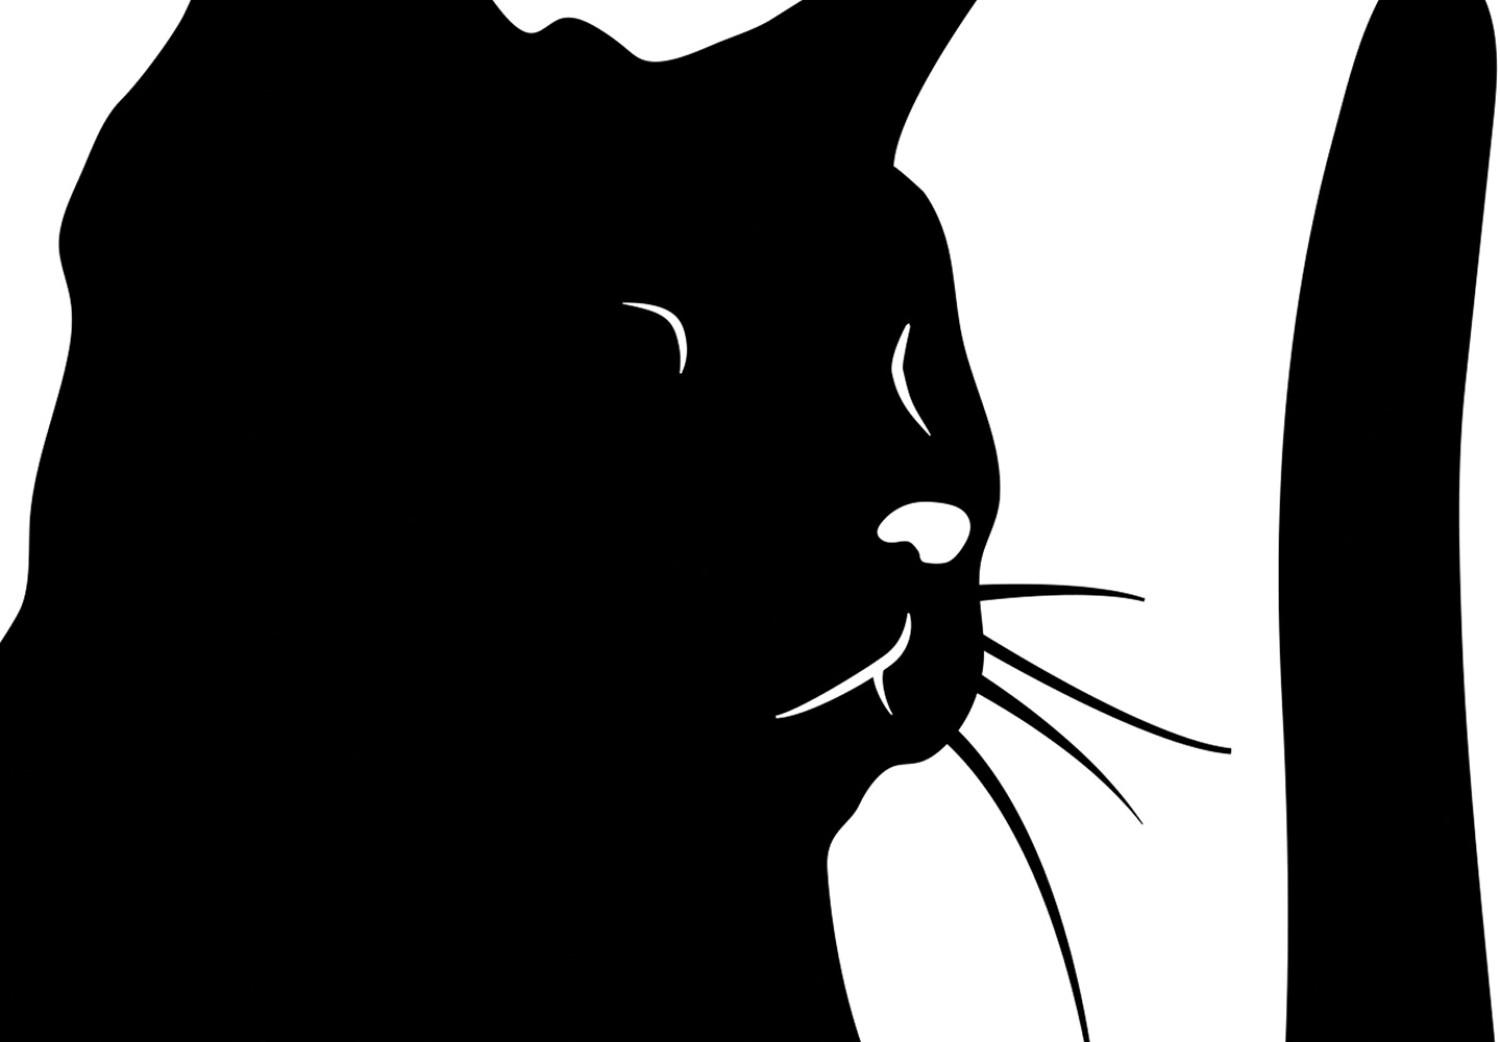 Cuadro moderno Gato curioso (1 pieza) vertical - animal negro en fondo blanco